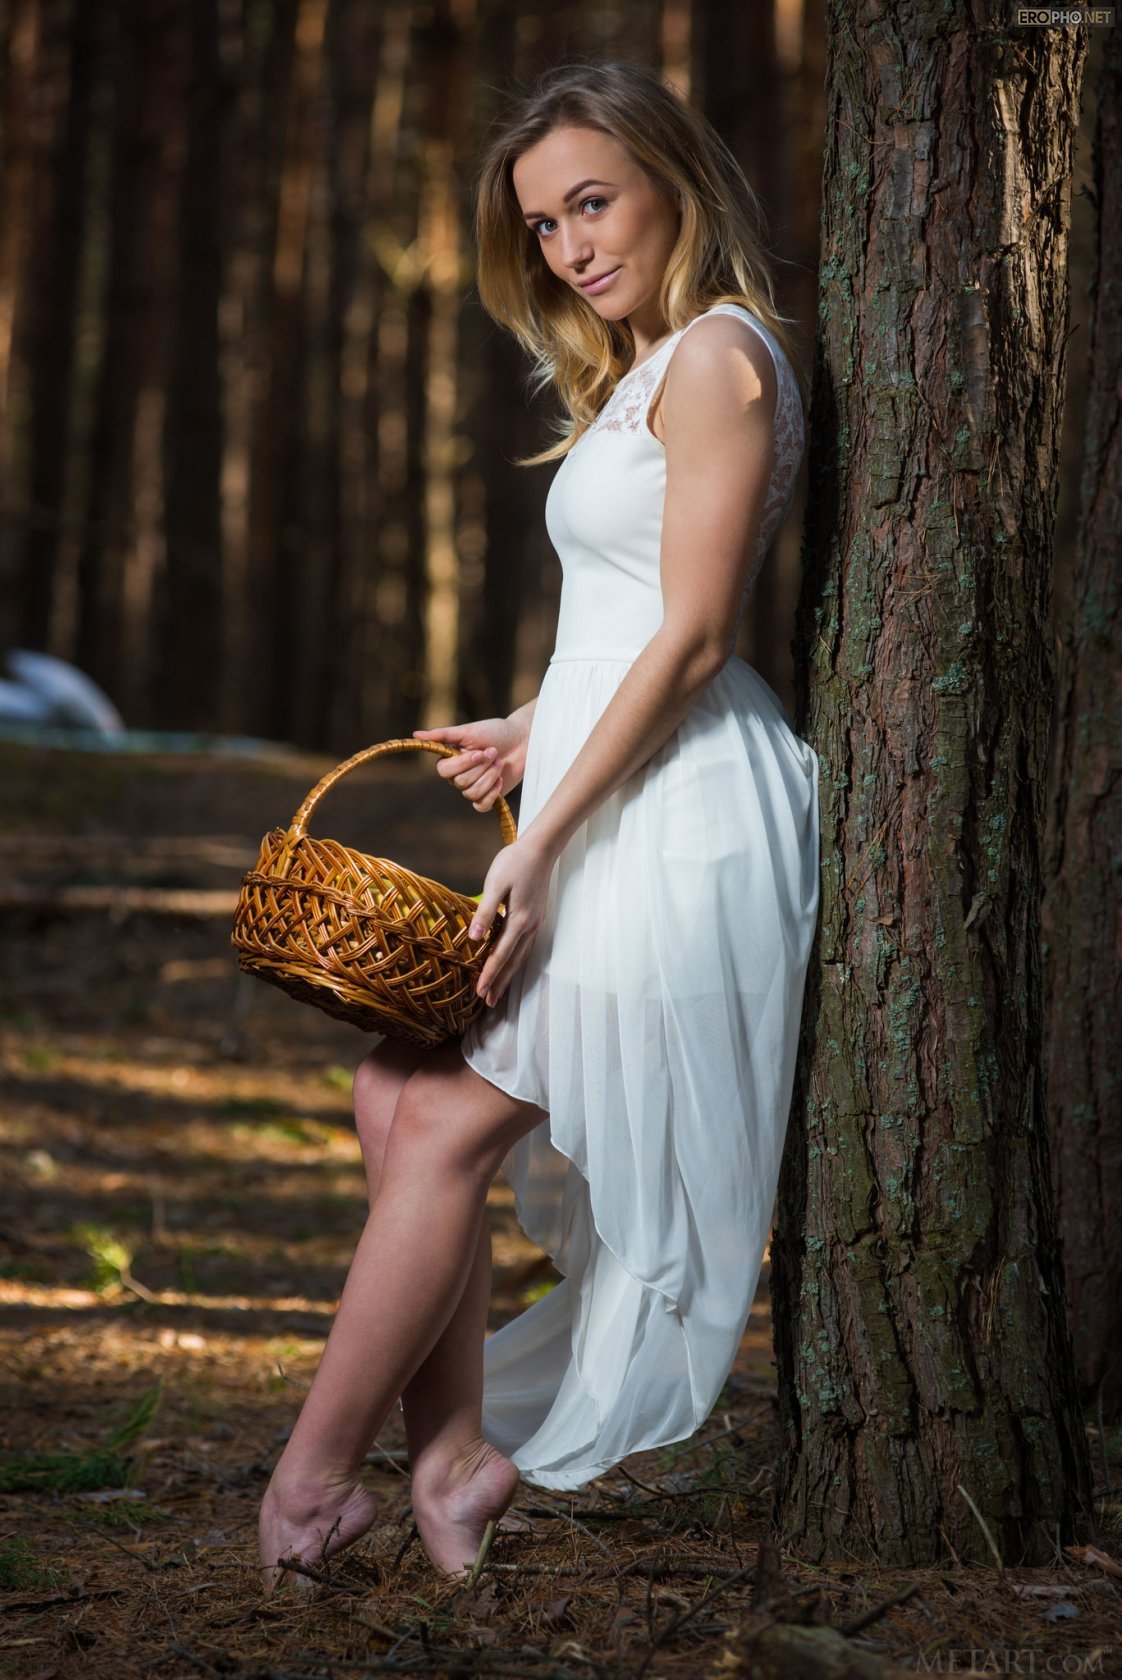 Привлекательная киска голой девки в лесу  (15 русская фото эротика)